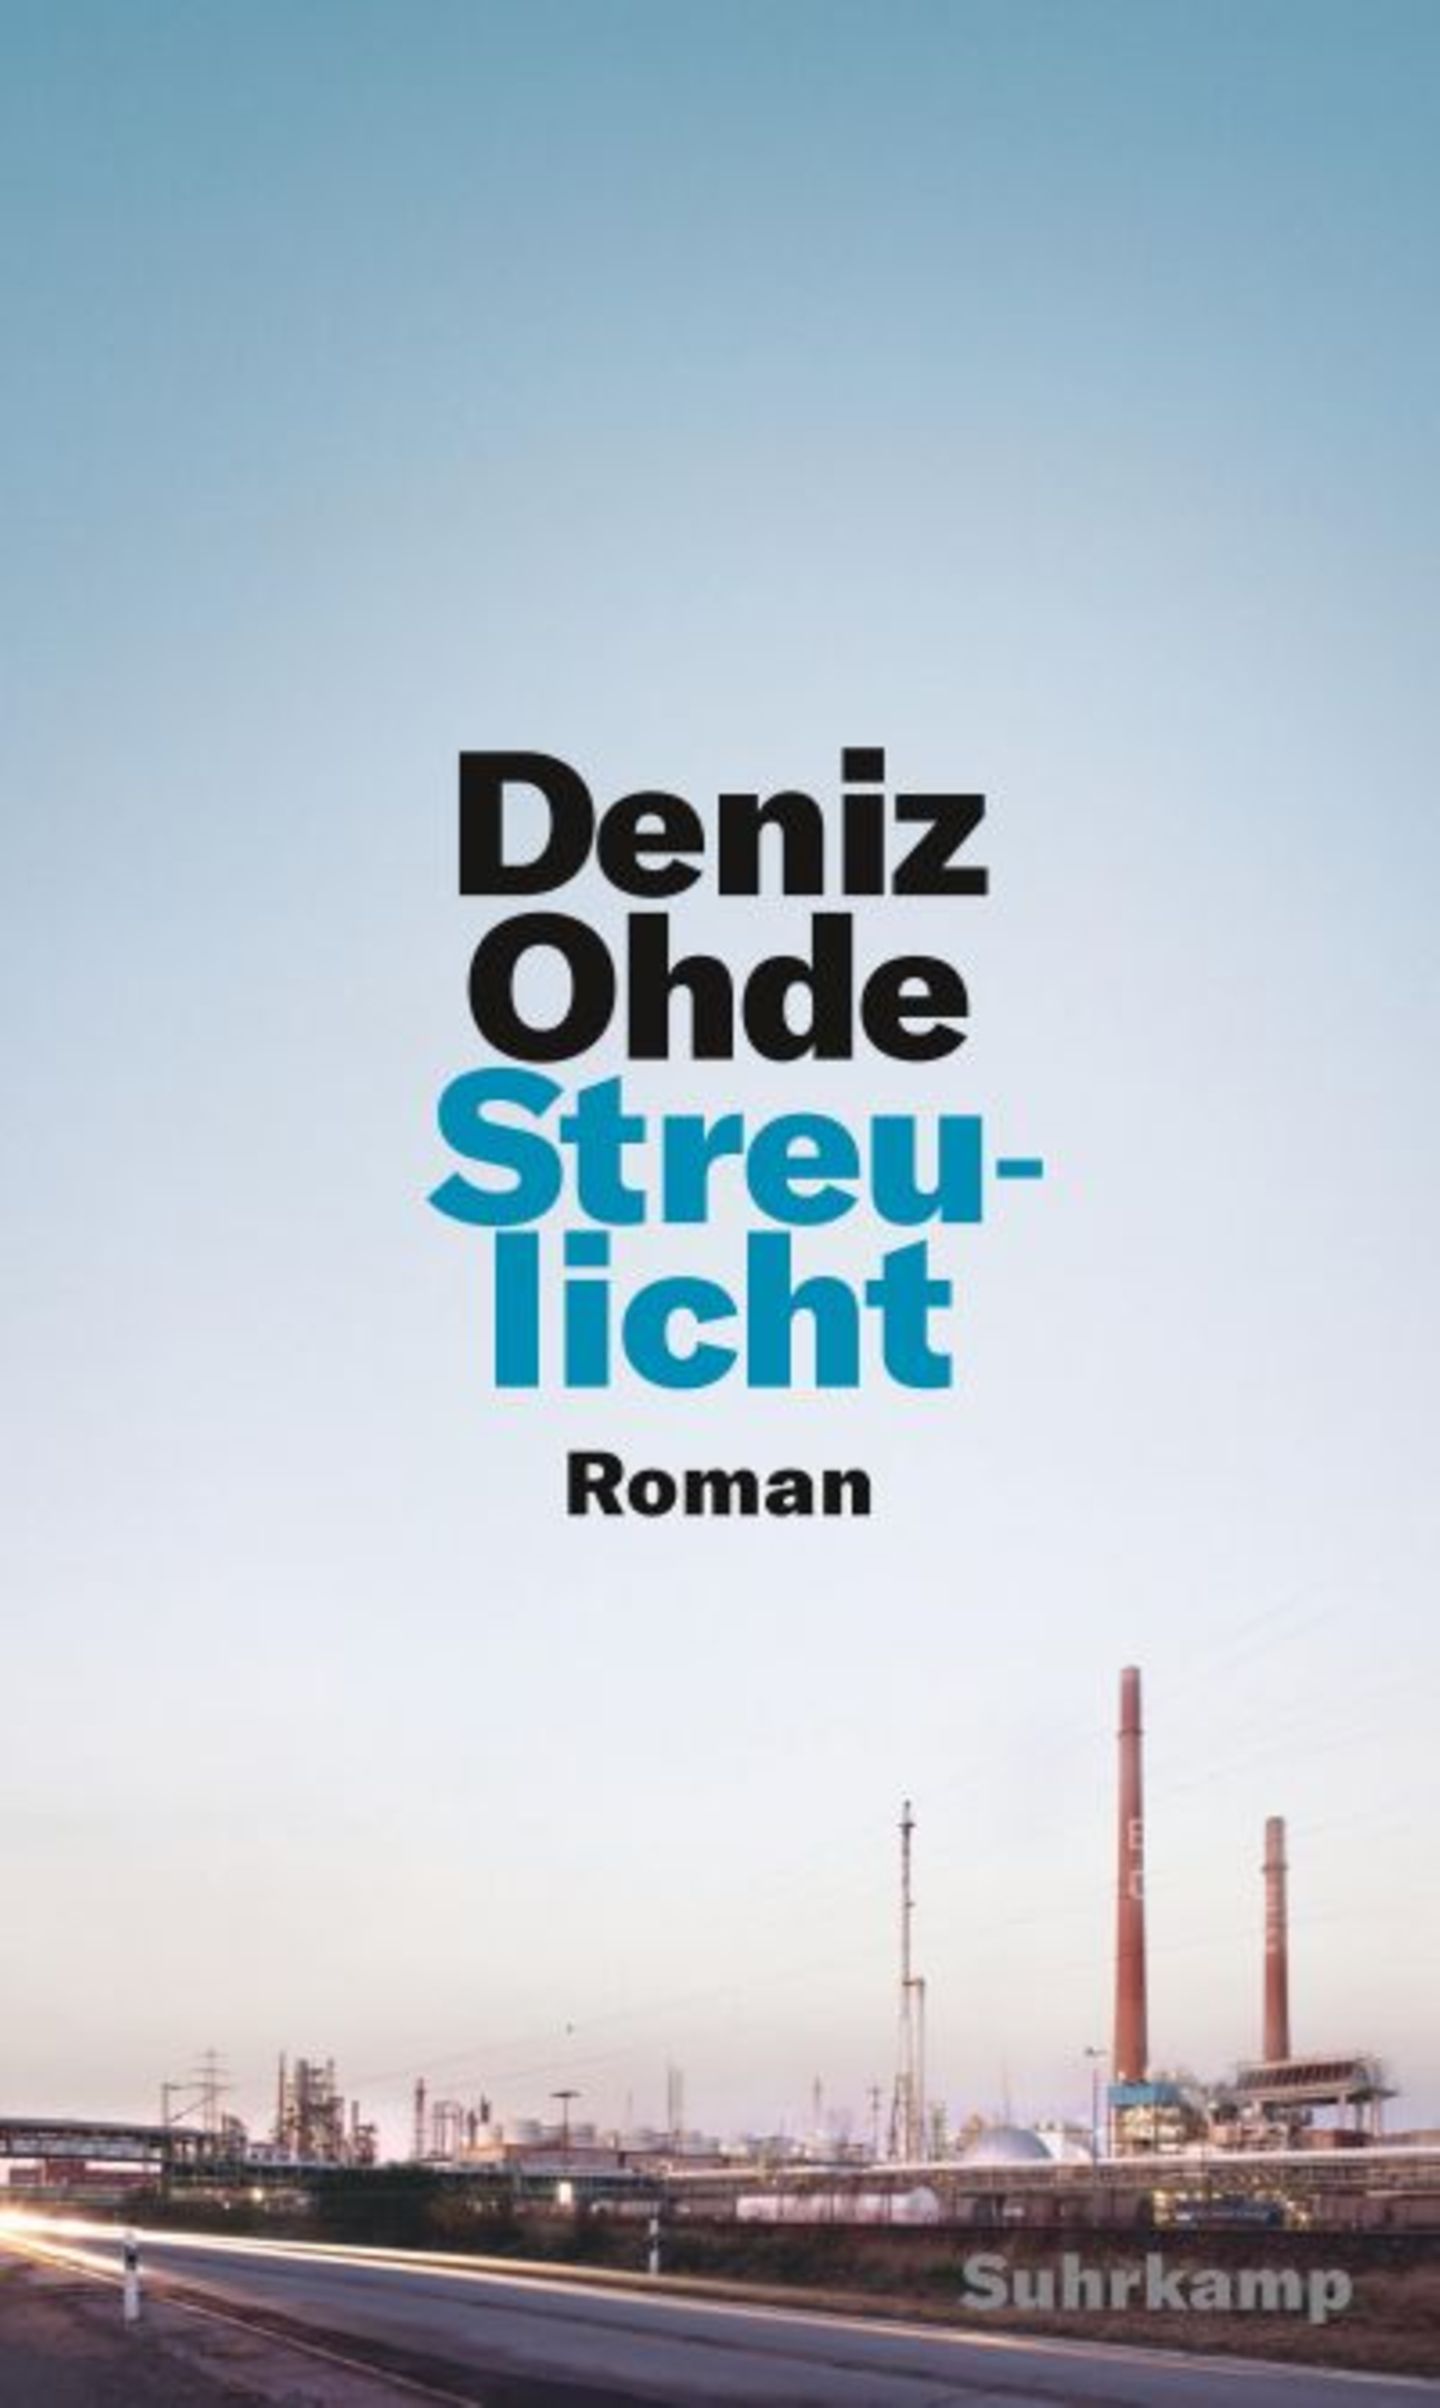 Rassismus in Deutschland ist ein wichtiges und endlich auch ein großes Thema. Dazu passt Deniz Ohdes Debütroman "Streulicht". Er ist wunderbar geschrieben und ergründet die subtilen und dennoch wirkmächtigen Facetten der Ausgrenzung von Einwanderer:innen, die jenseits offener Feindseligkeit stattfindet. Die Ich-Erzählerin leidet unter den oft unausgesprochenen Zuschreibungen als migrantisches Arbeiterkind und an der Kluft zwischen Bildungsversprechen und erfahrener Ungleichheit. Nach und nach versucht sie, sich von der verinnerlichten Abwertung ihrer Person durch die Mehrheitsgesellschaft zu befreien. Das berührende Debüt, das mit dem Literaturpreis der Jürgen-Ponto-Stiftung ausgezeichnet wurde, möchte ich meiner Nichte, die Grundschullehramt studiert, unter den Weihnachtsbaum legen. 